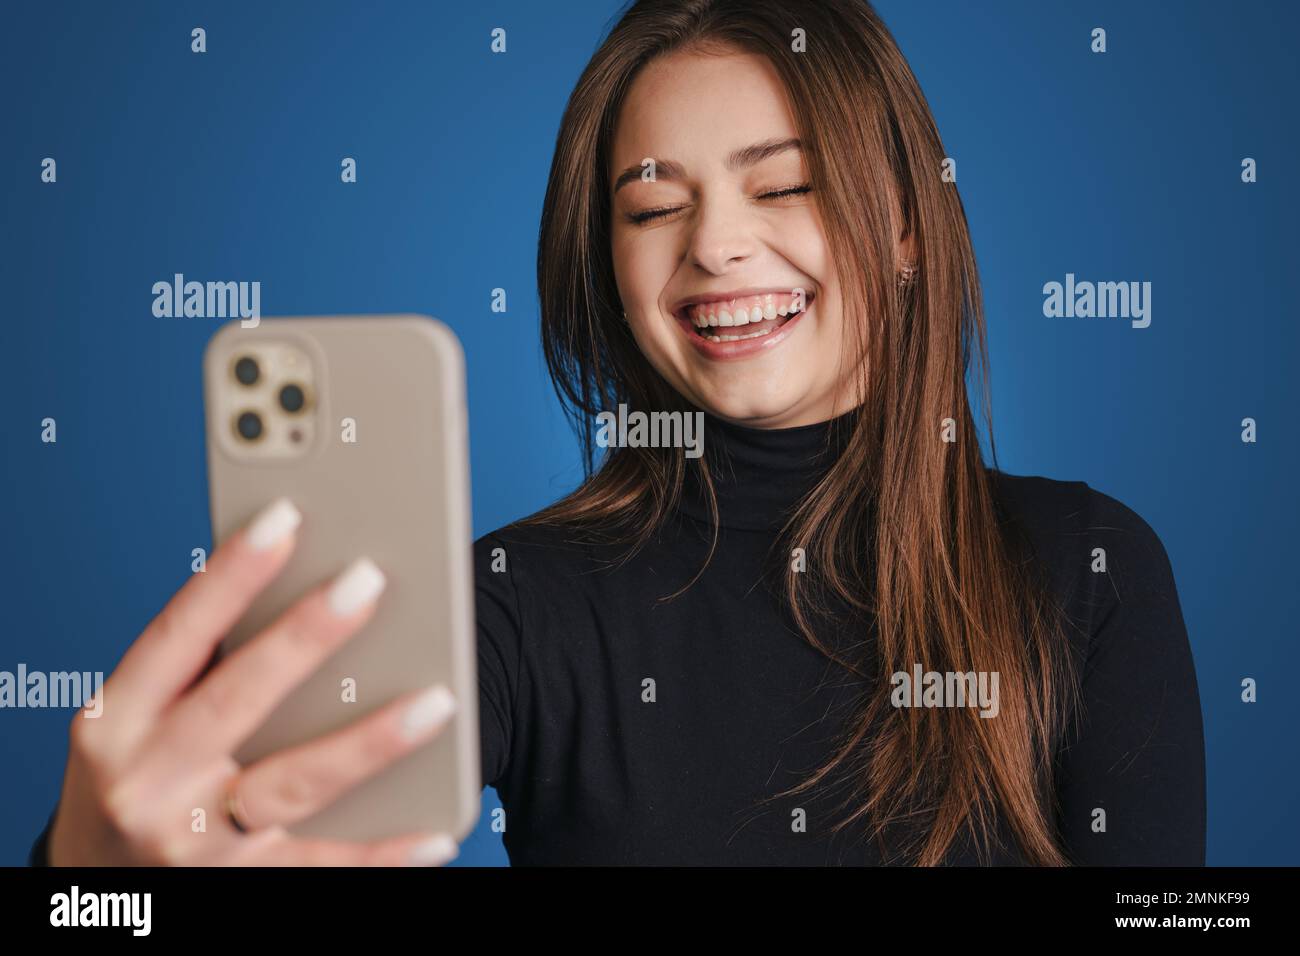 Portrait d'une jeune femme charmante tirant doucement la main avec un smartphone près du visage prenant la photo sur fond bleu. Banque D'Images